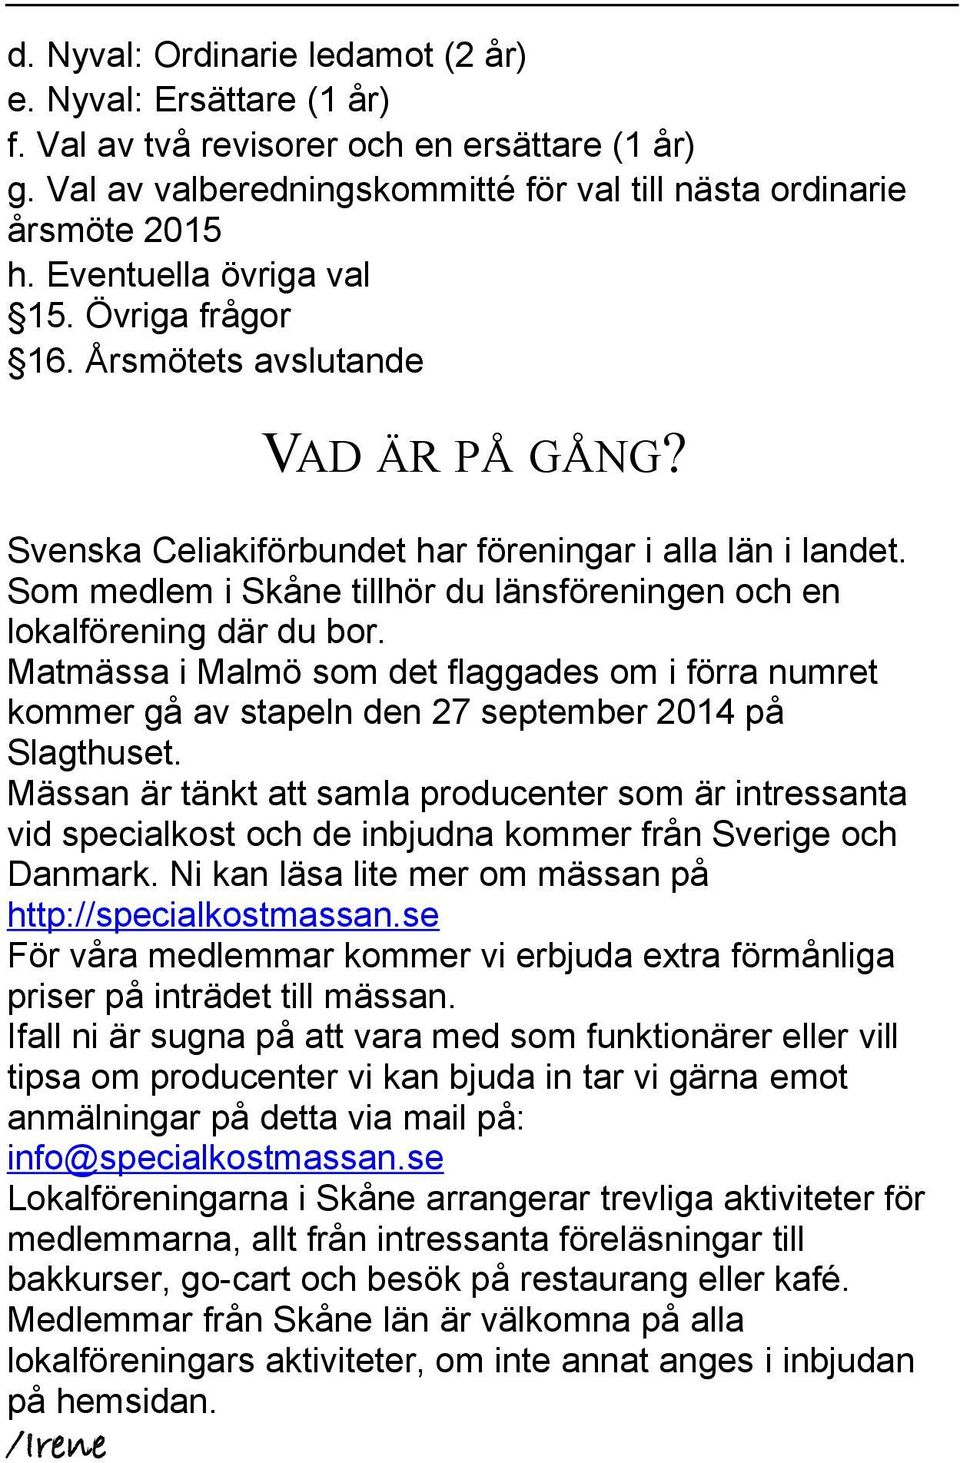 Som medlem i Skåne tillhör du länsföreningen och en lokalförening där du bor. Matmässa i Malmö som det flaggades om i förra numret kommer gå av stapeln den 27 september 2014 på Slagthuset.